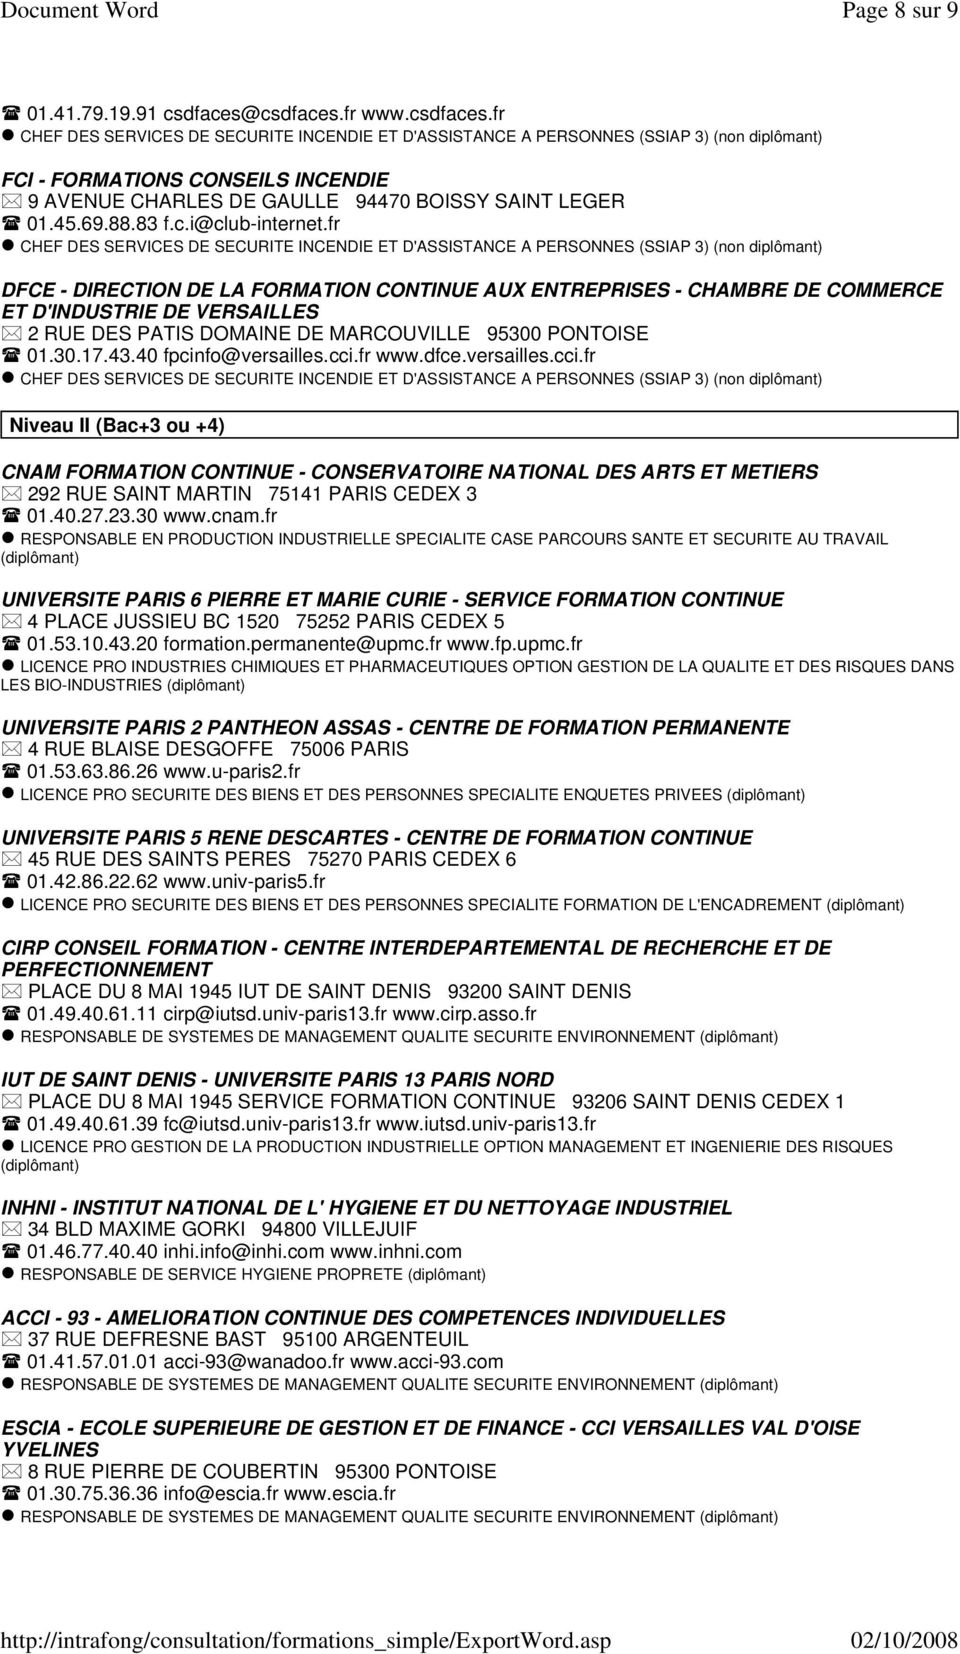 cci.fr www.dfce.versailles.cci.fr Niveau II (Bac+3 ou +4) CNAM FORMATION CONTINUE - CONSERVATOIRE NATIONAL DES ARTS ET METIERS 292 RUE SAINT MARTIN 75141 PARIS CEDEX 3 01.40.27.23.30 www.cnam.